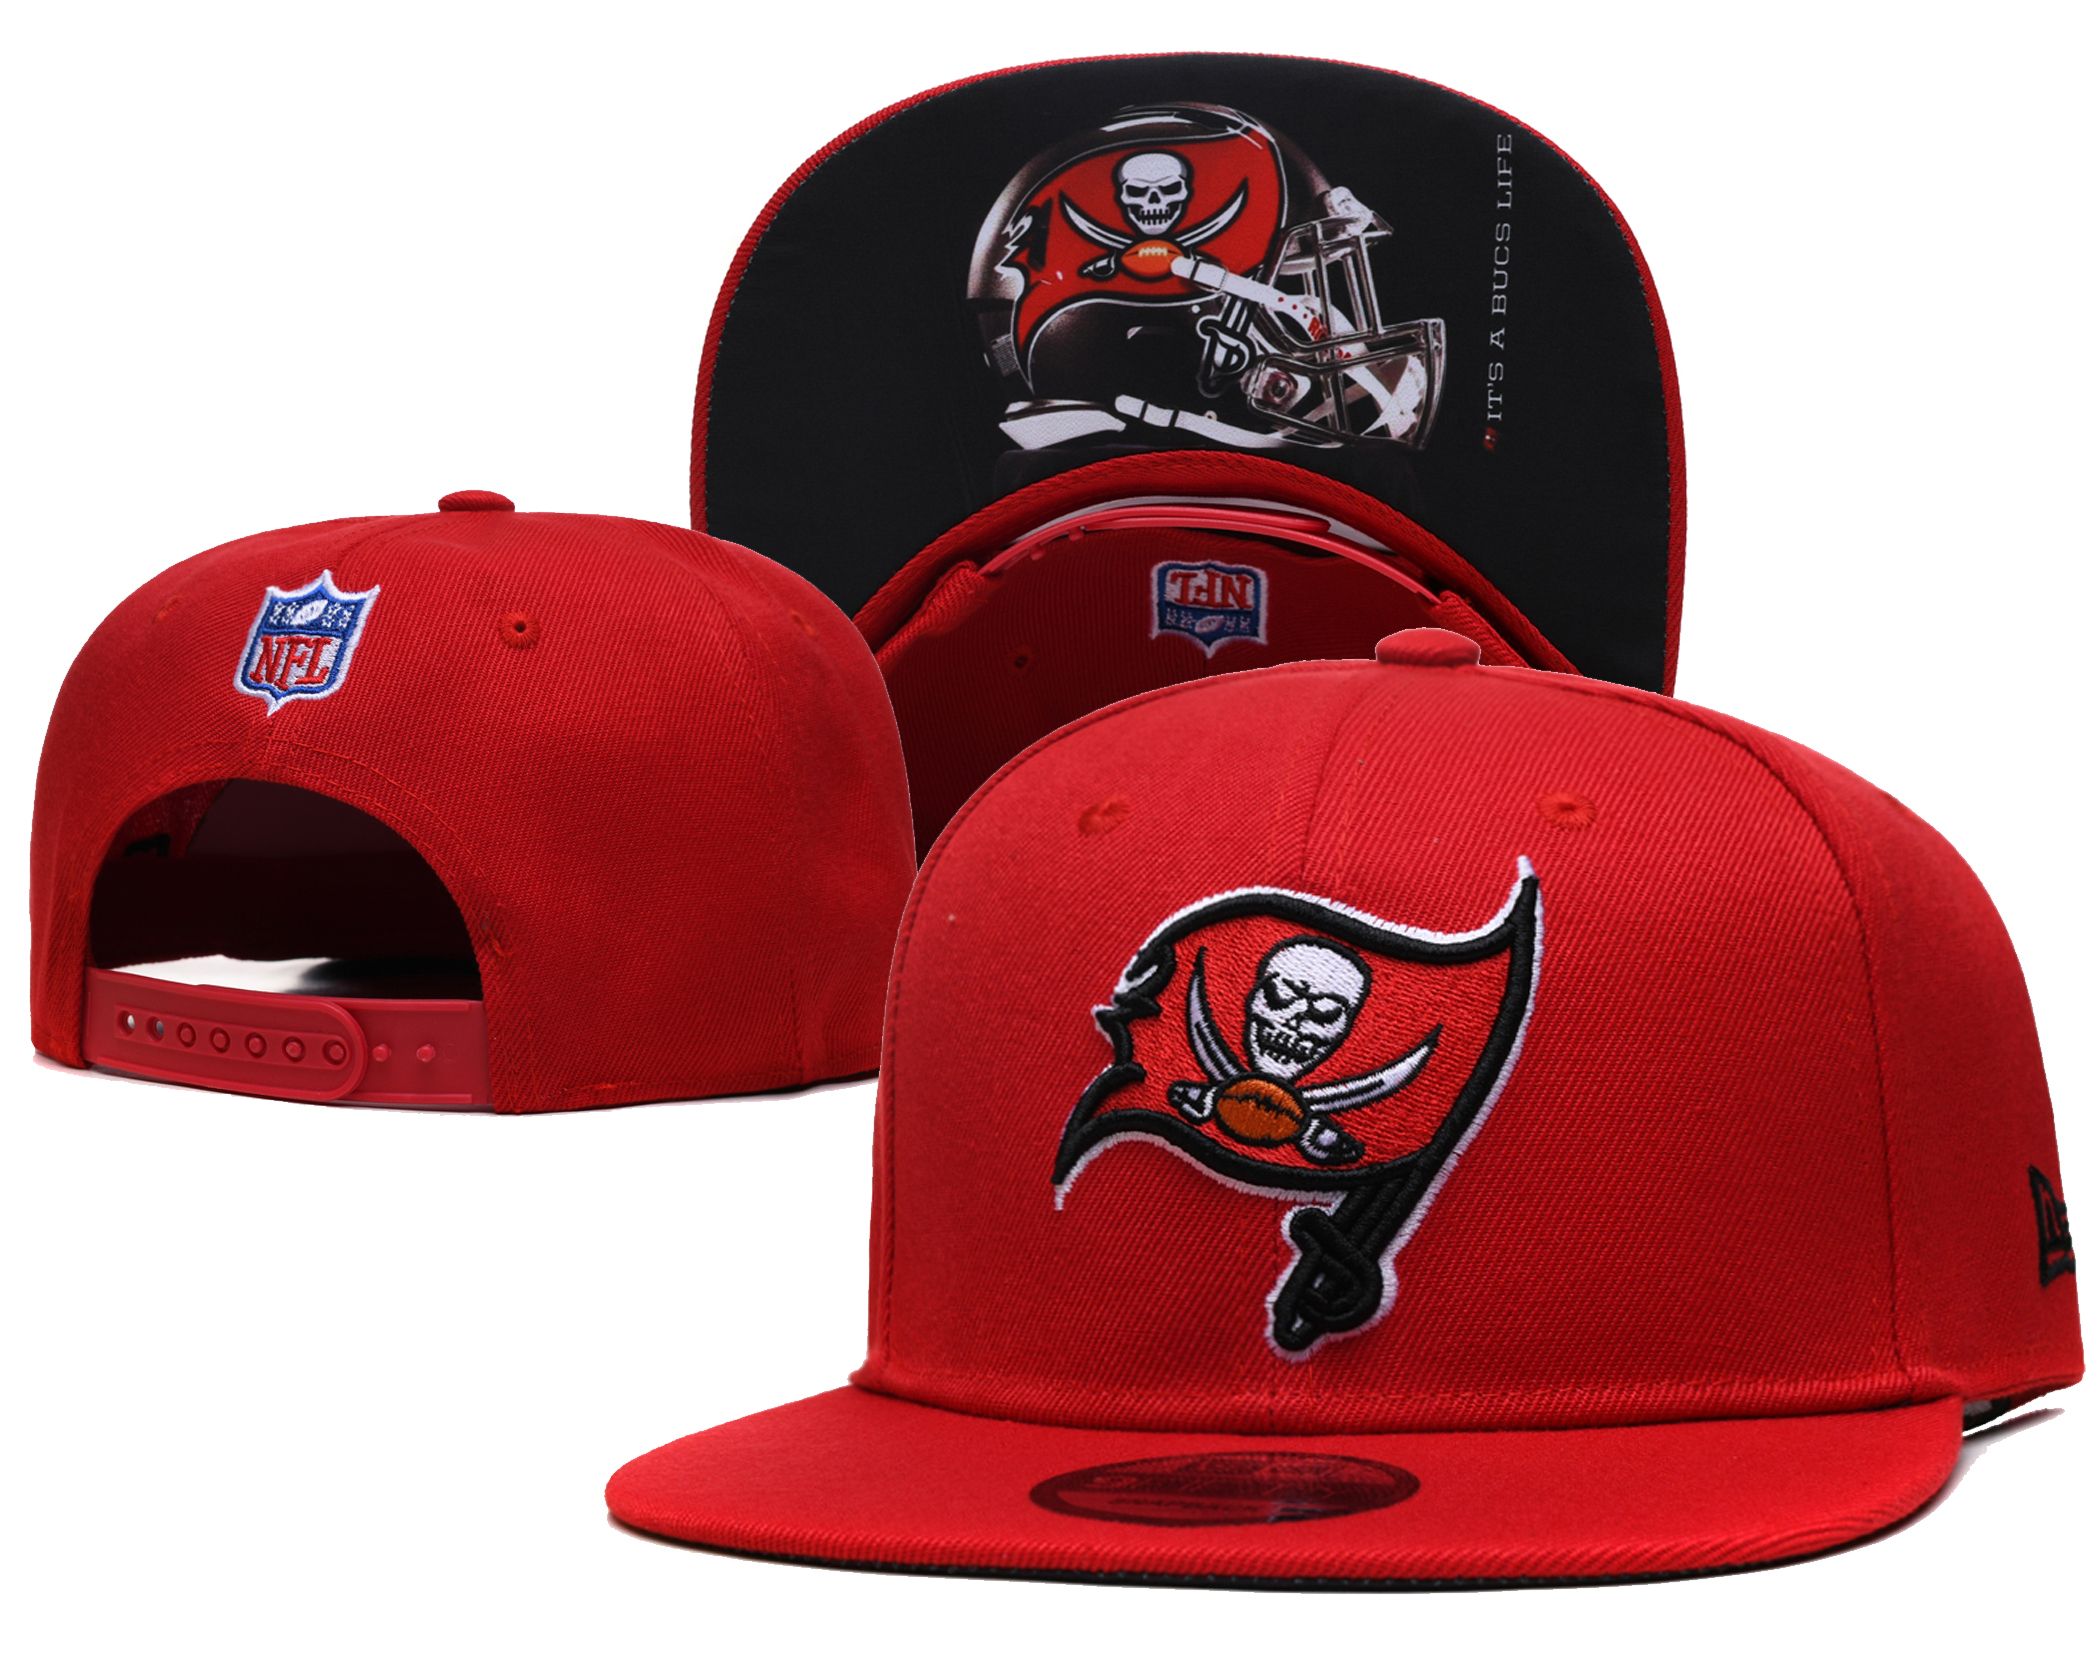 2021 NFL Tampa Bay Buccaneers 118 TX hat